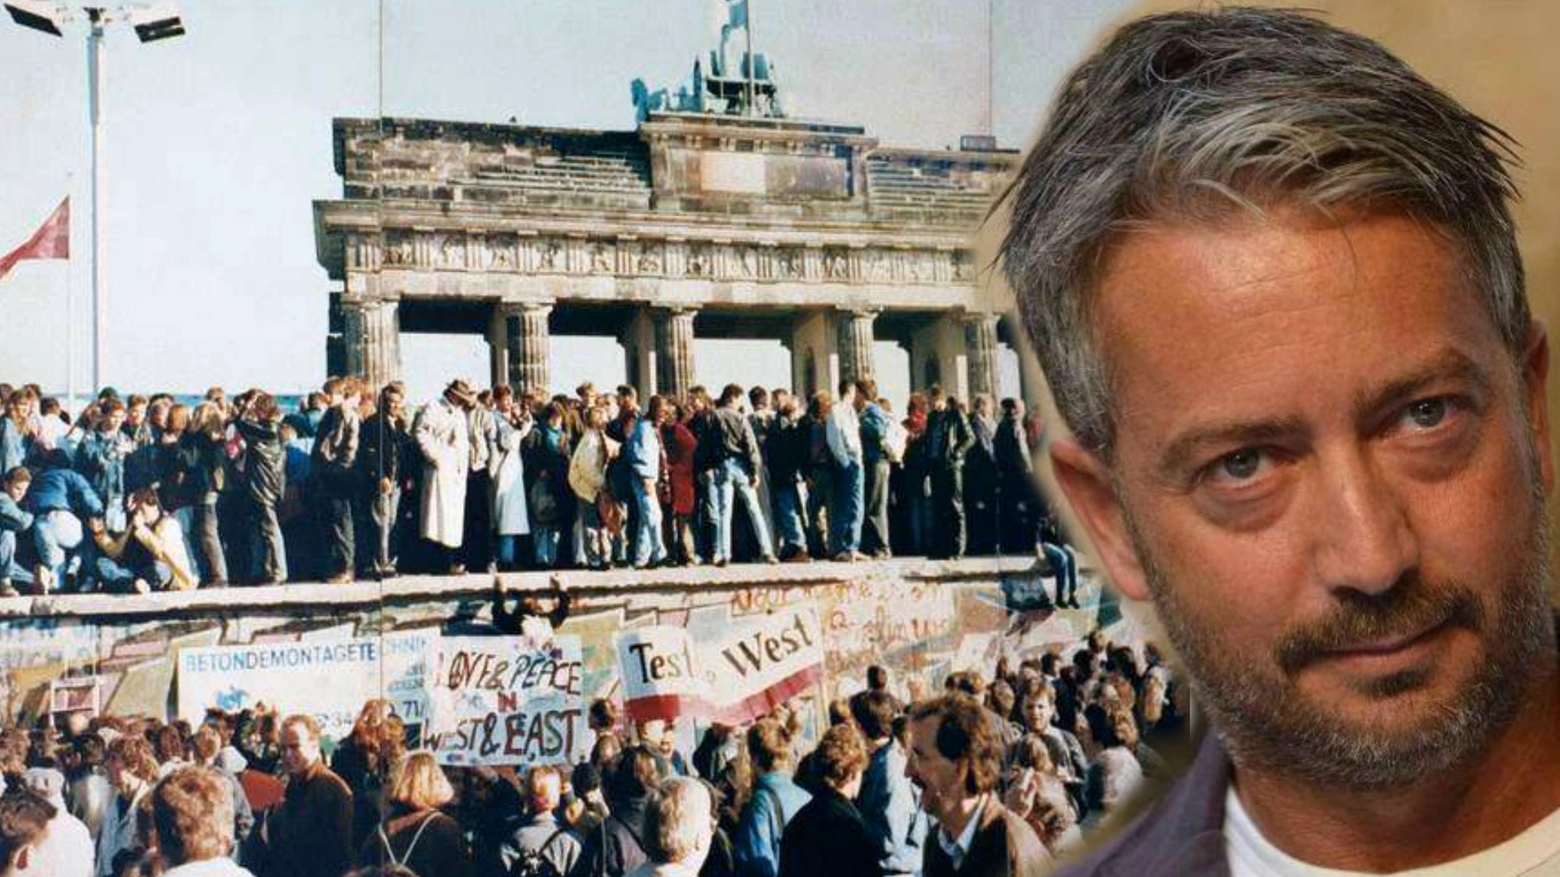 Paolo Ercolani e il Muro di Berlino nel 1989